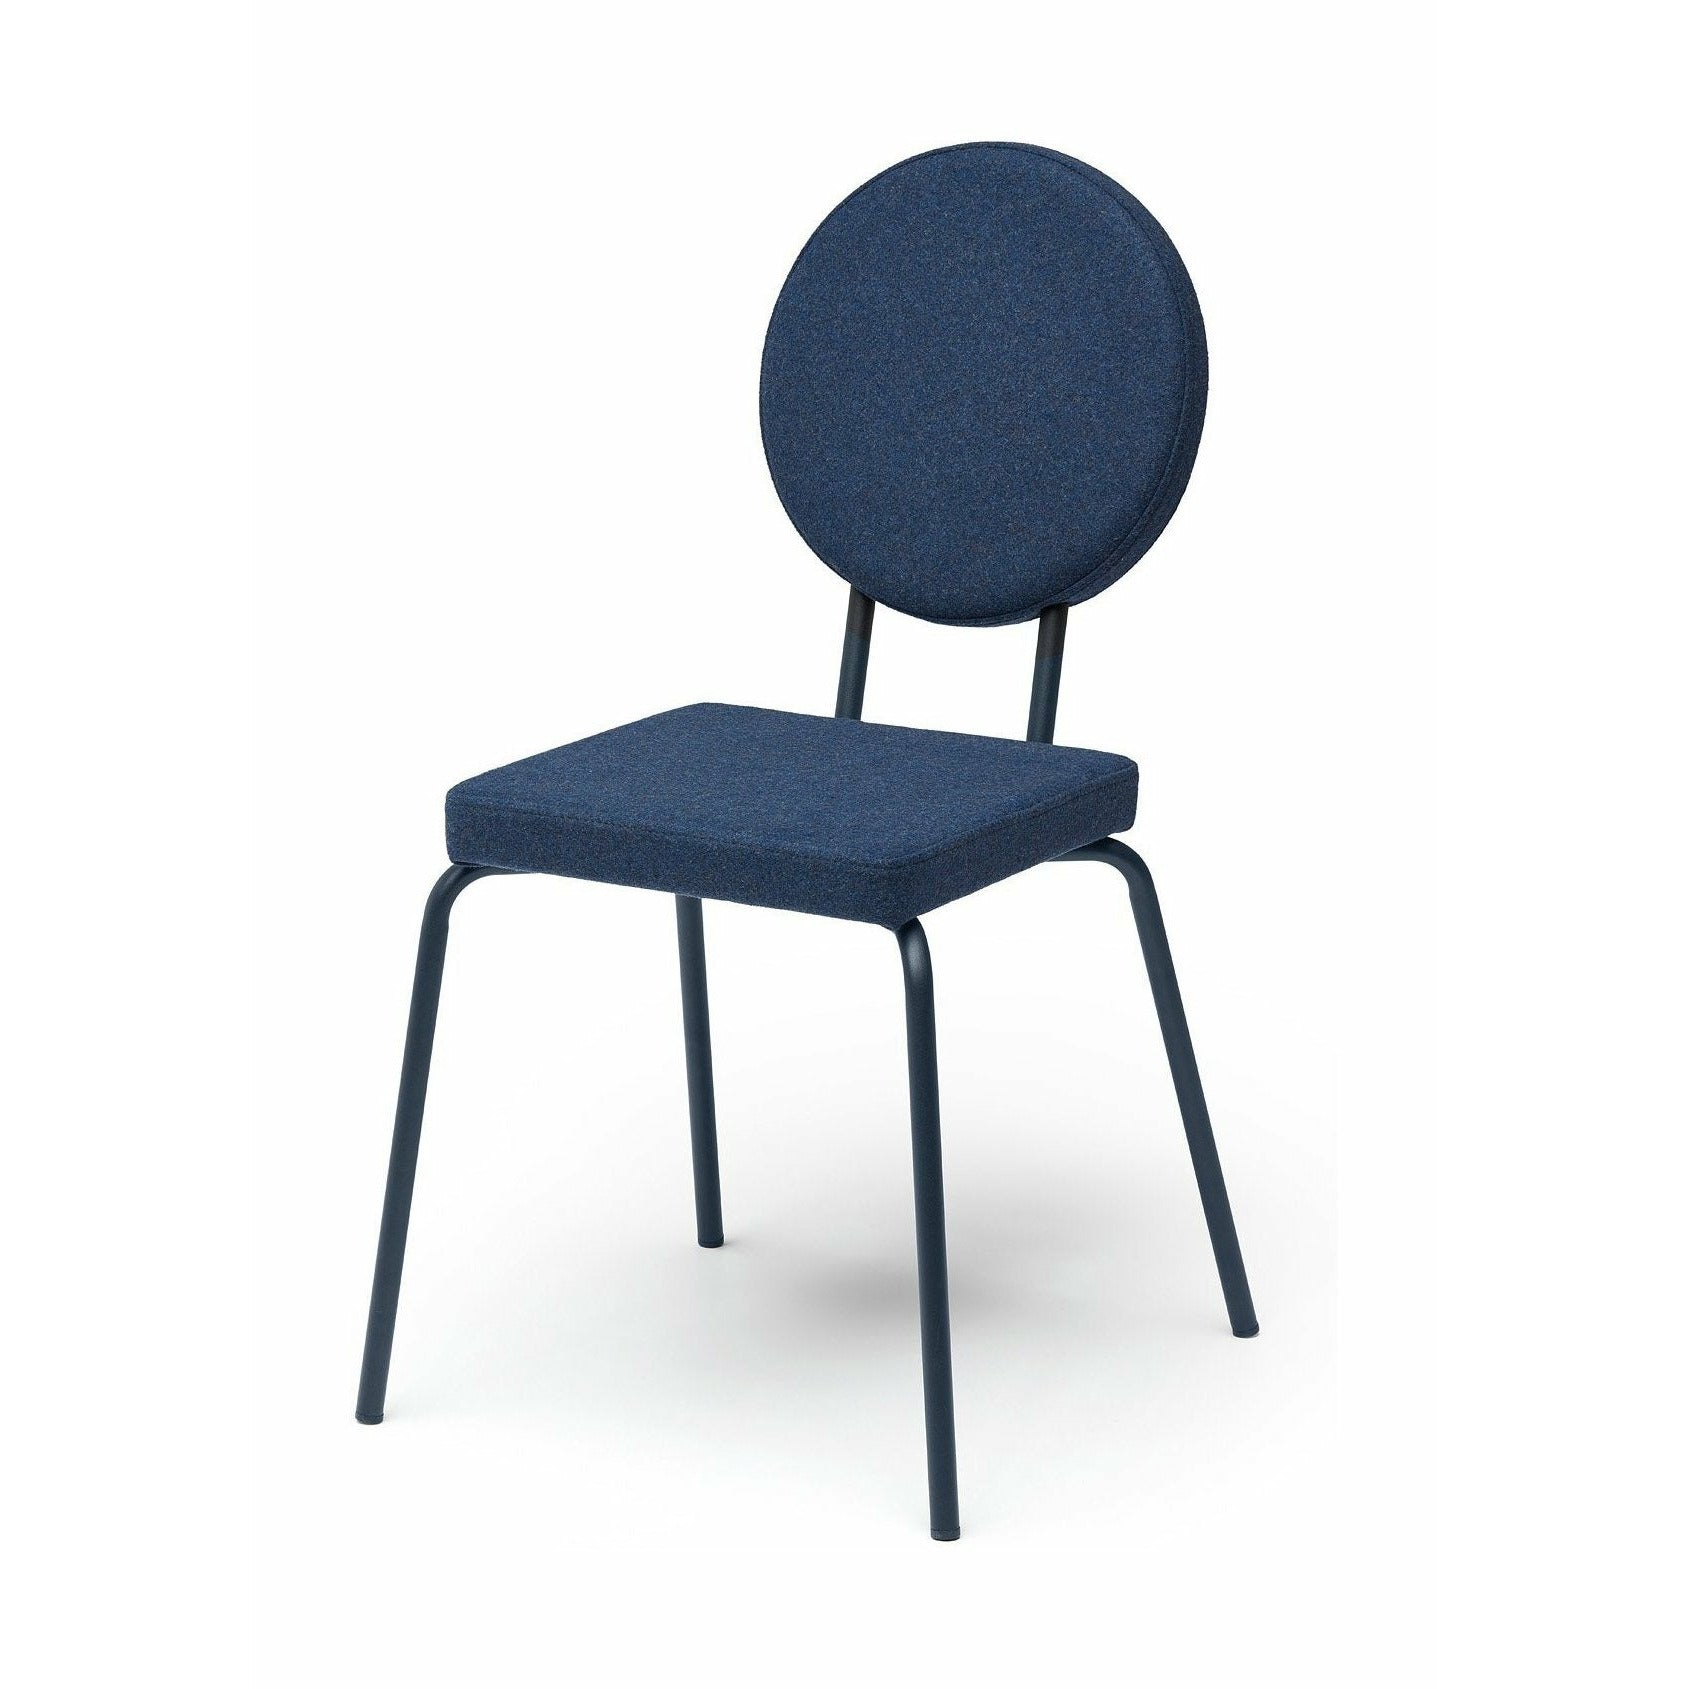 Puik Option chaise siège carré / dossier rond, bleu foncé